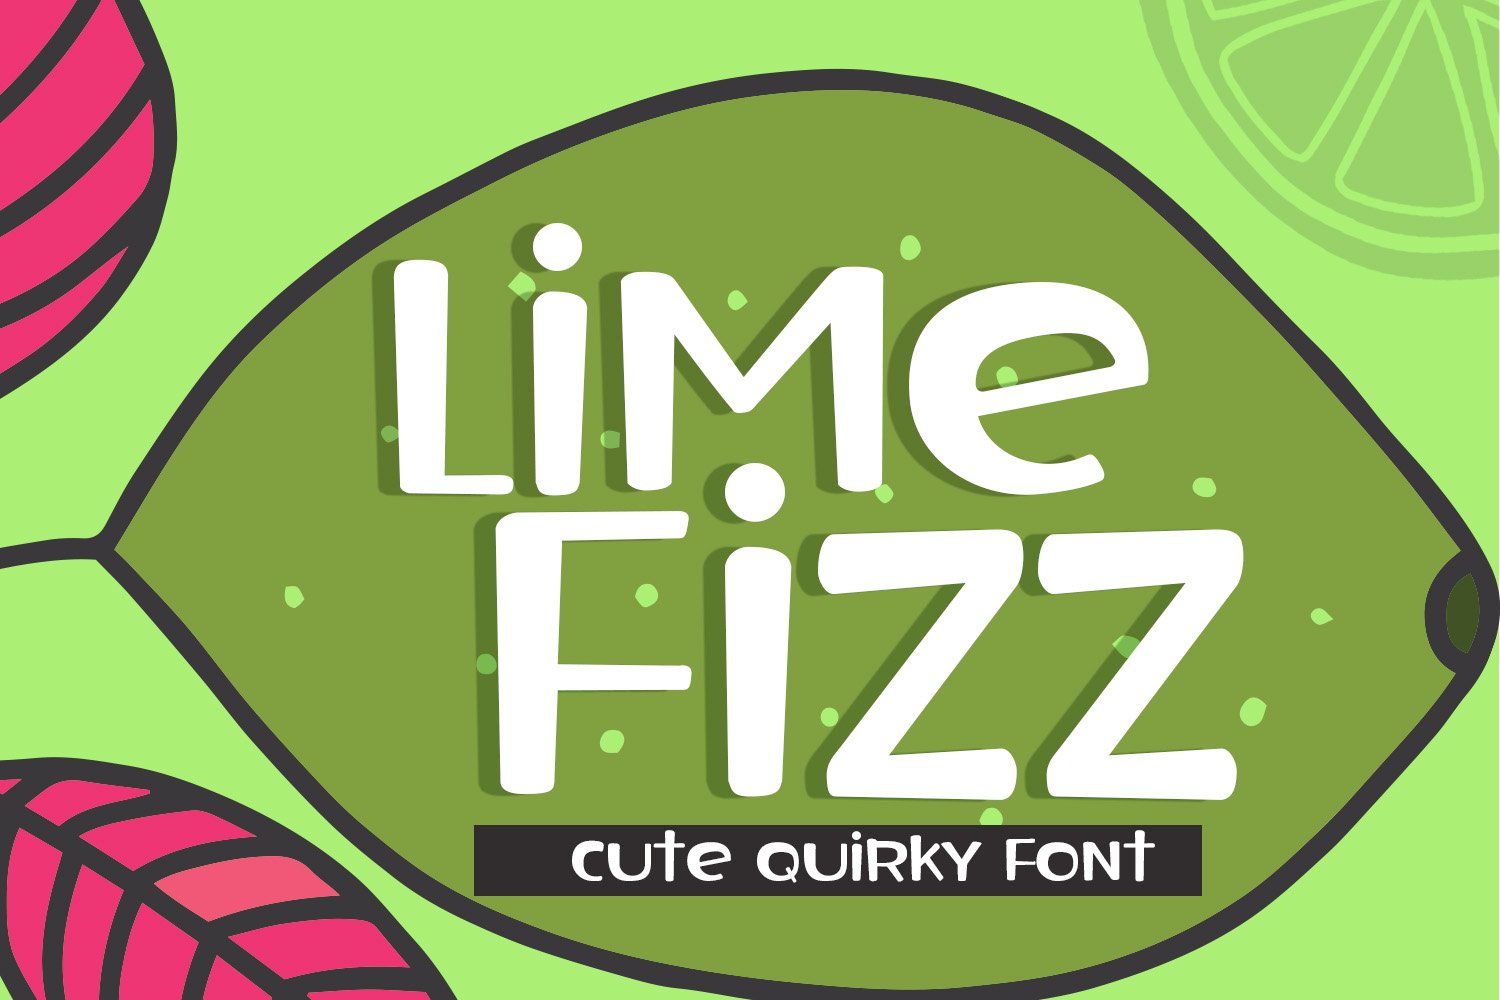 Lime Fizz Sans Serif Font cover image.